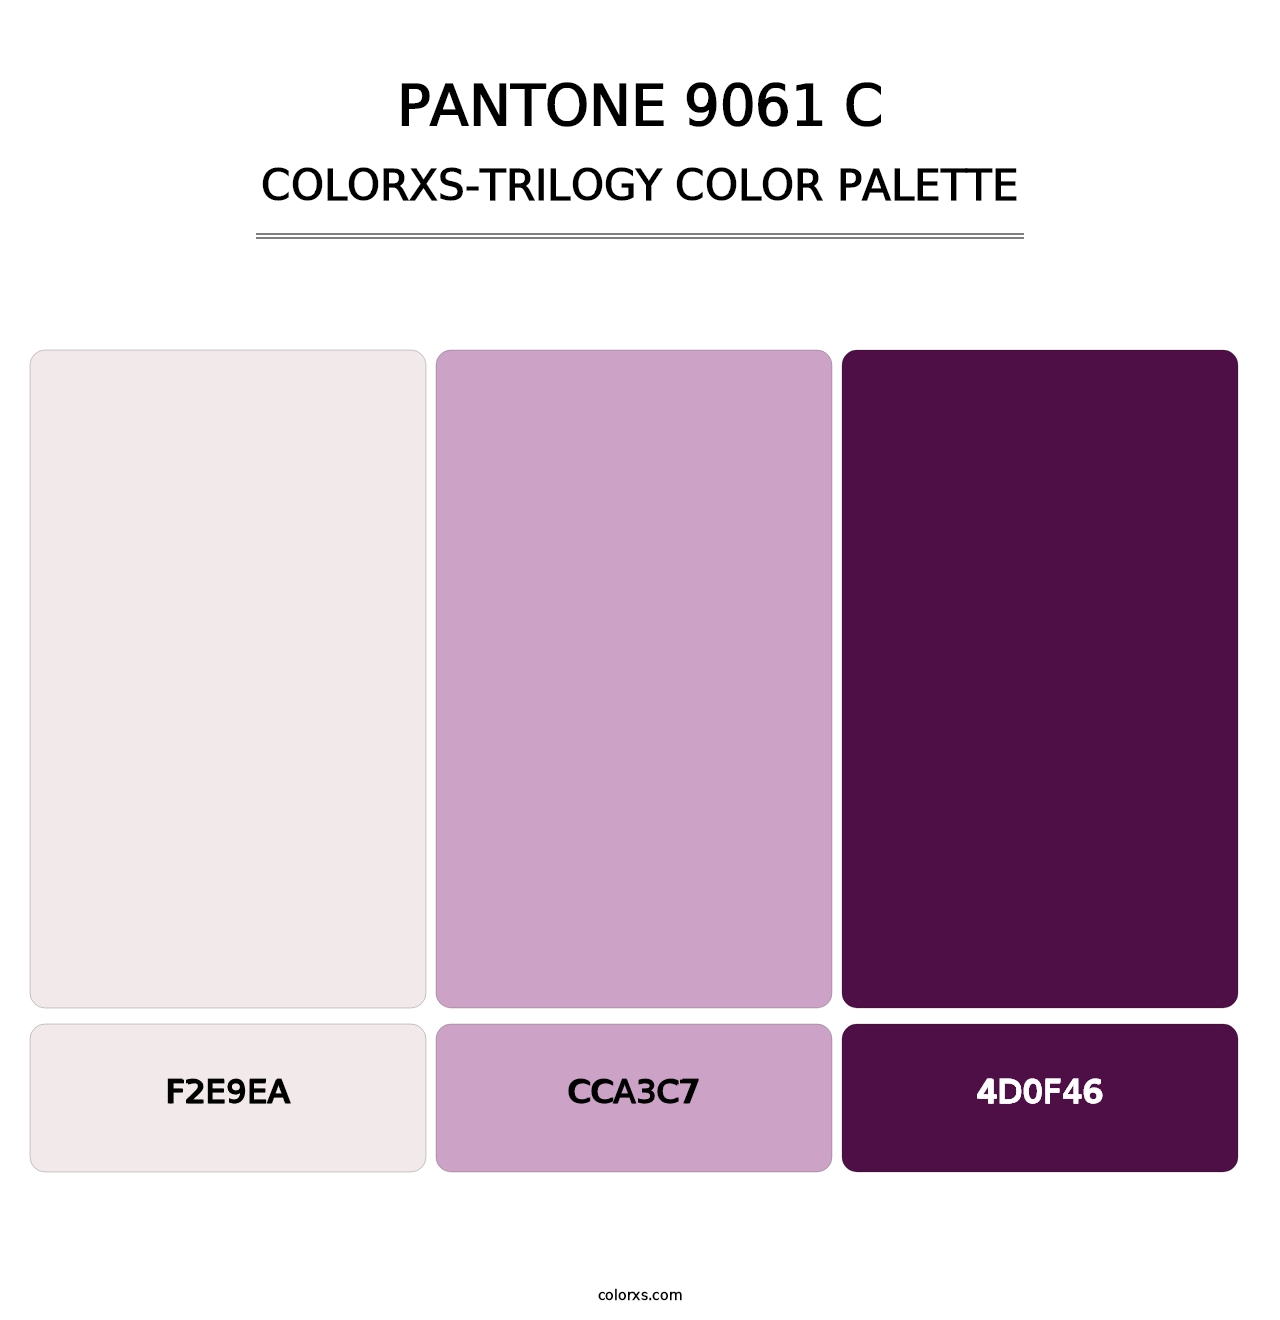 PANTONE 9061 C - Colorxs Trilogy Palette